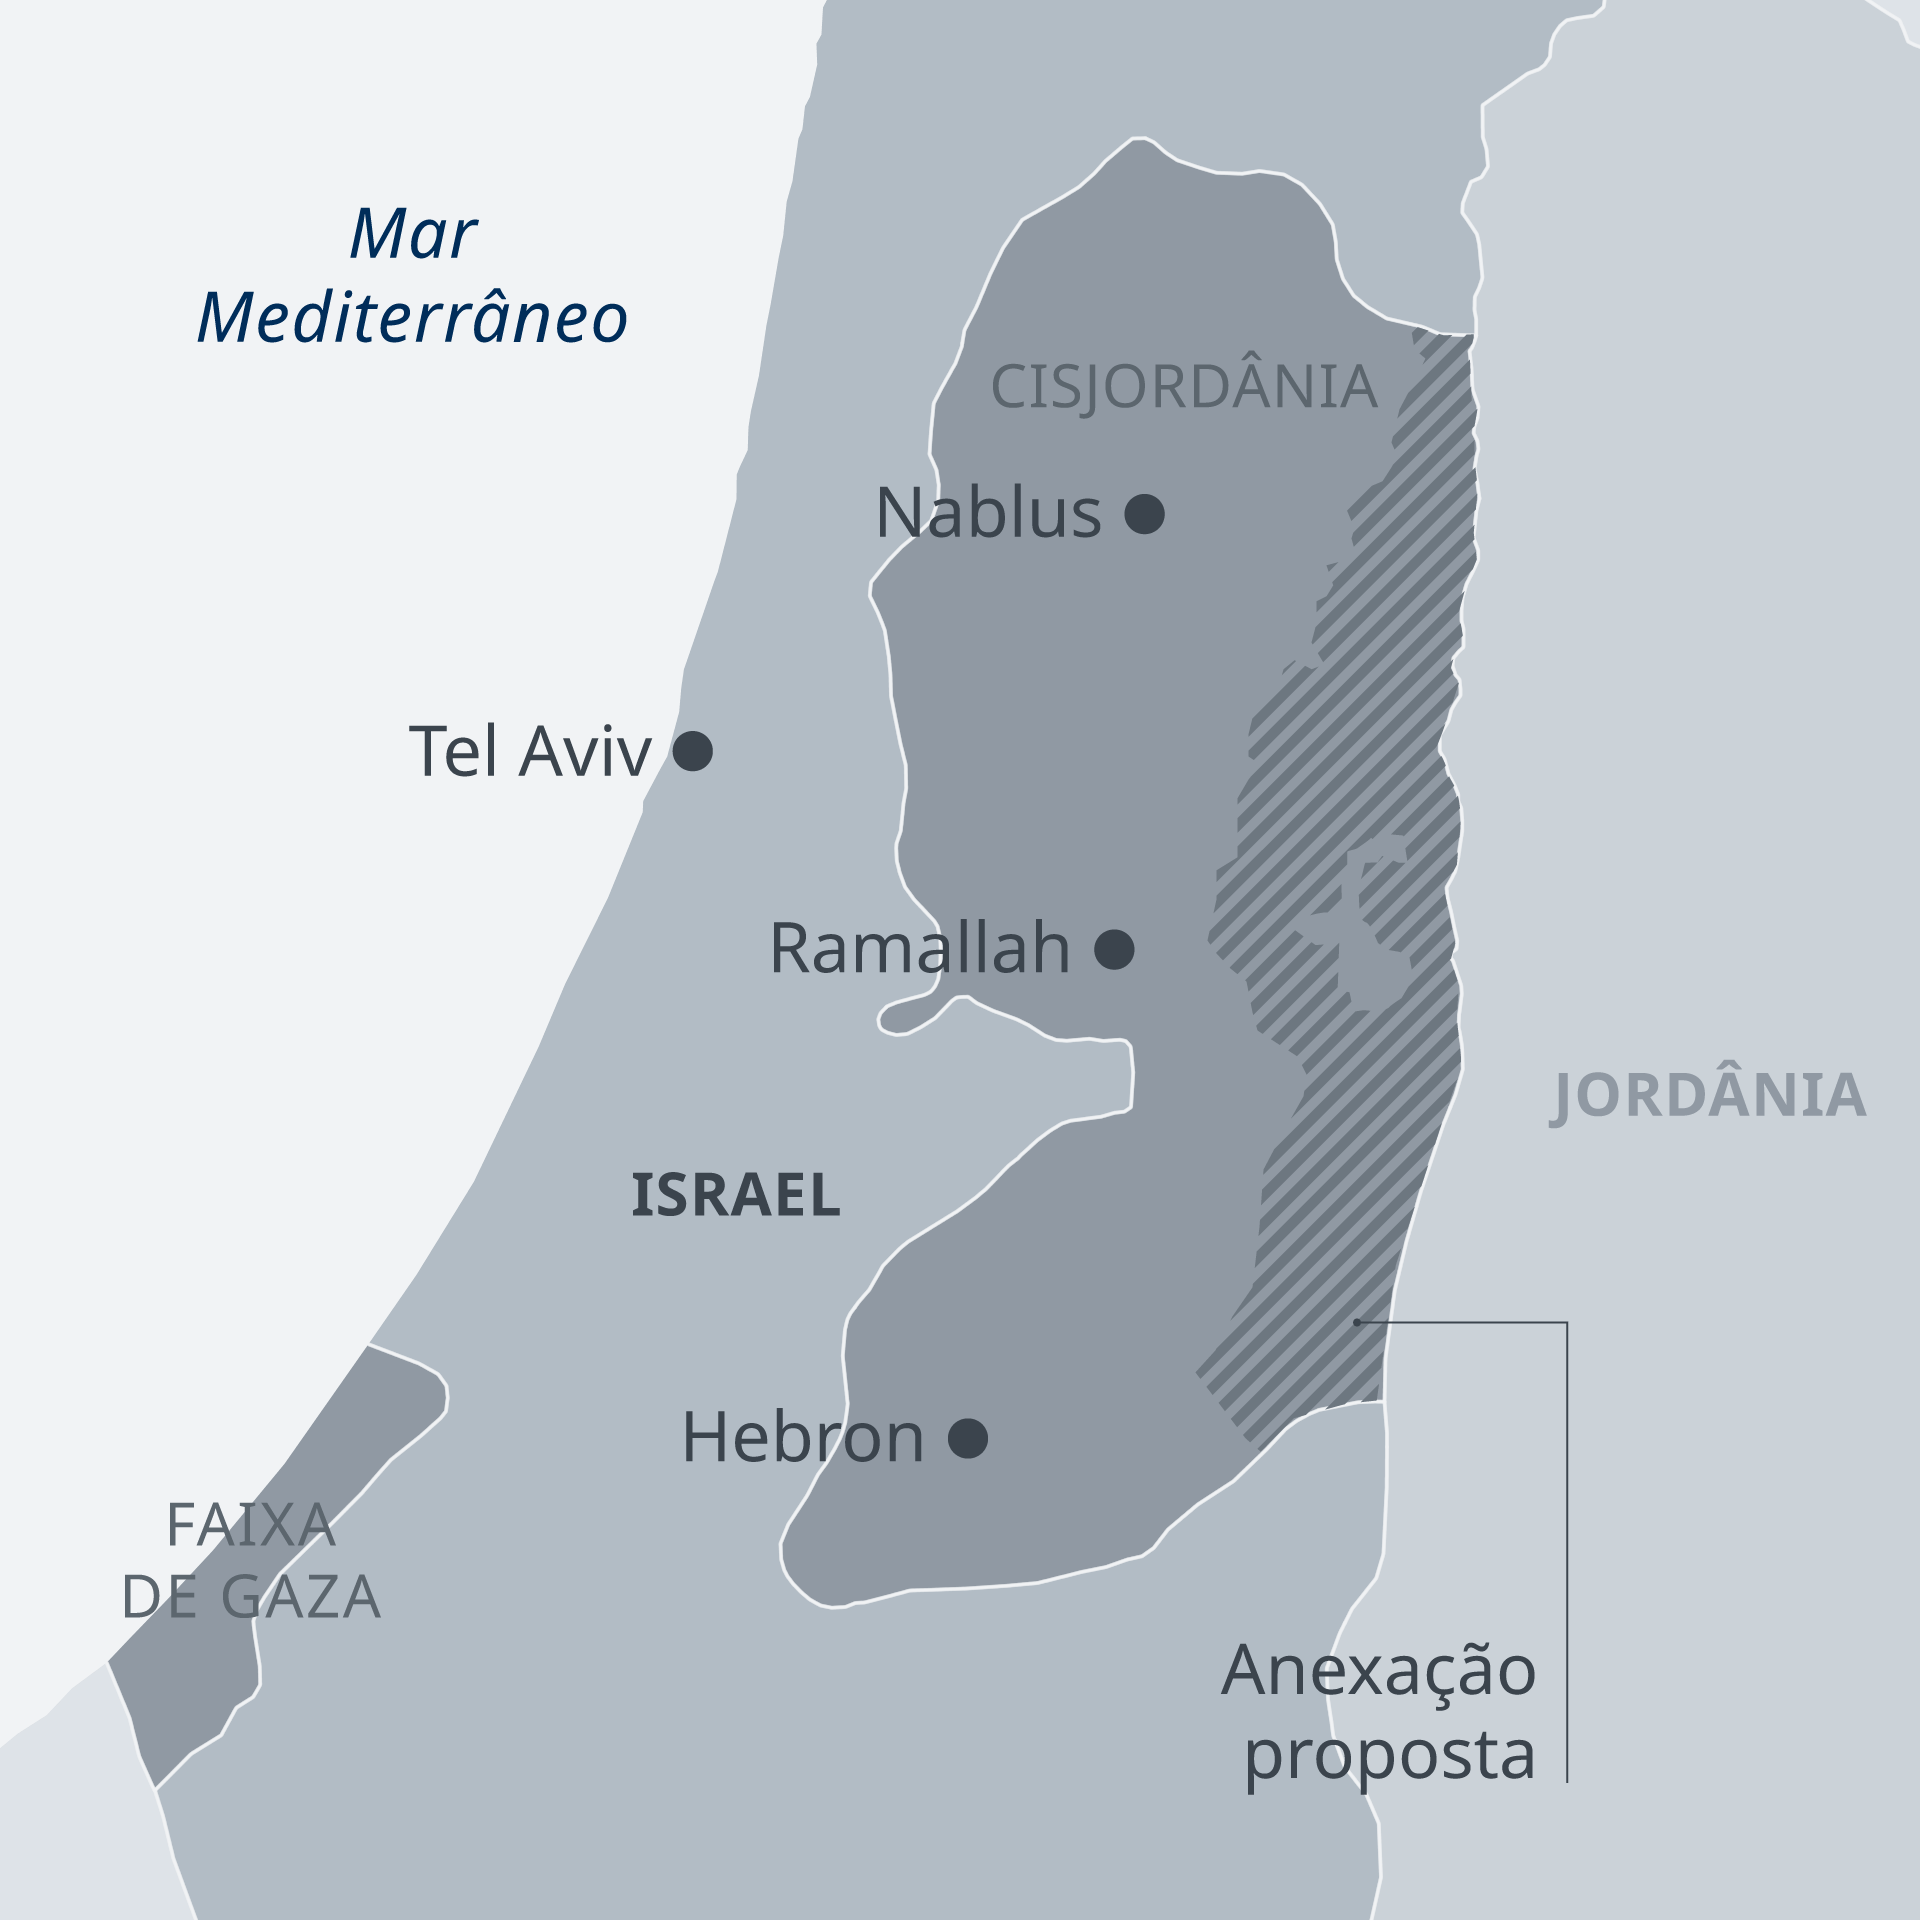 mapa-el-panorama-del-conflicto-territorial-que-se-vive-en-cisjordania-emol